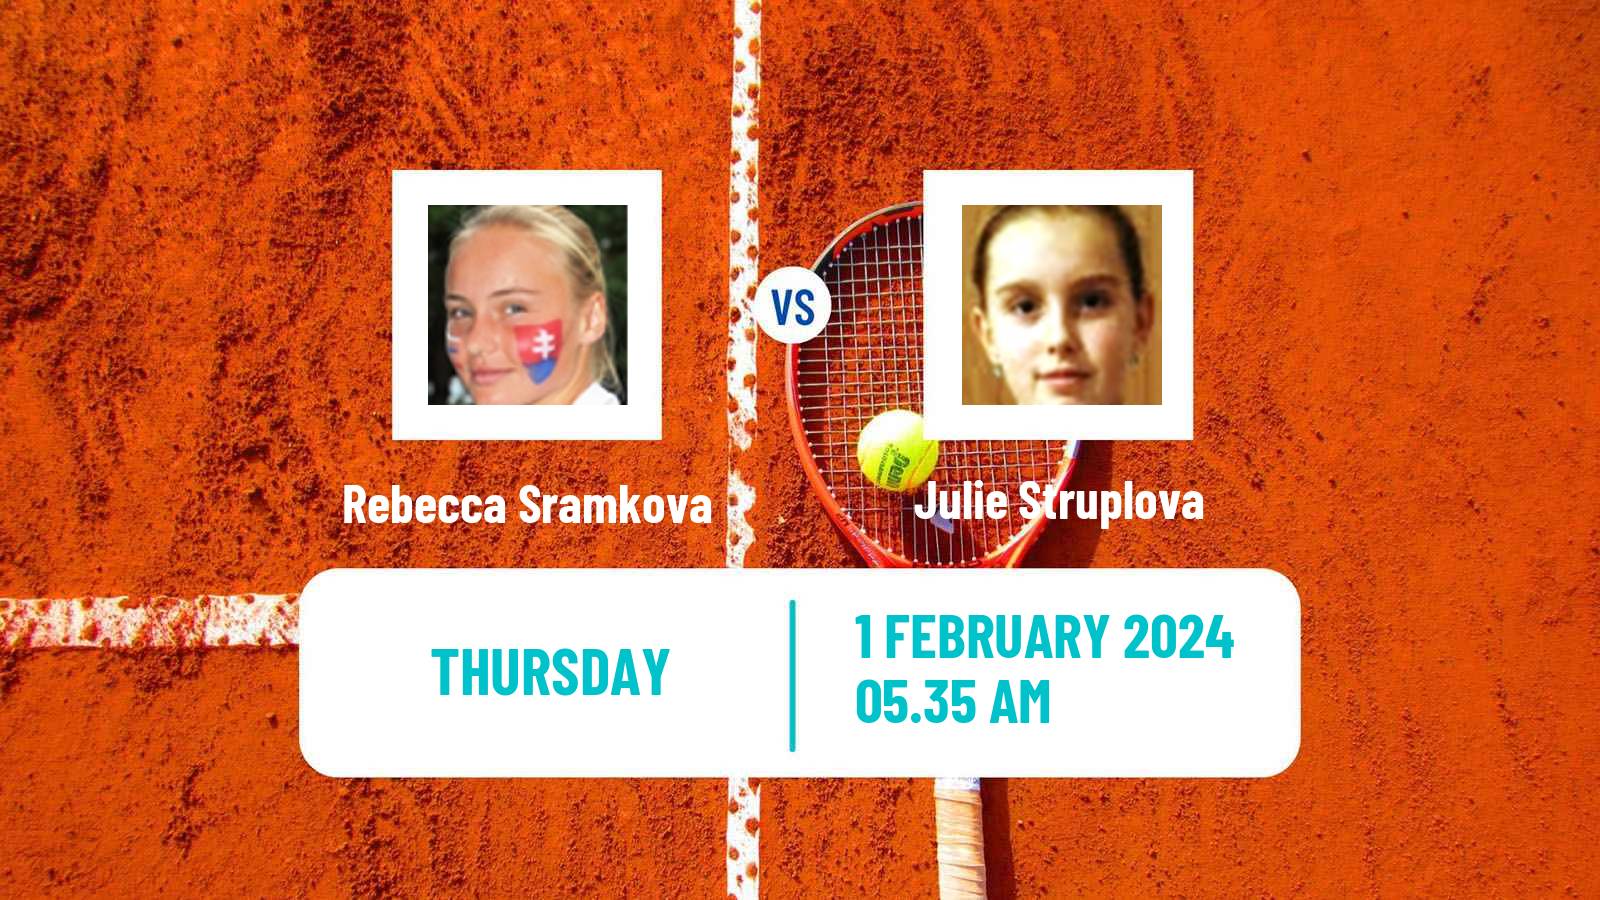 Tennis ITF W50 Porto Women Rebecca Sramkova - Julie Struplova